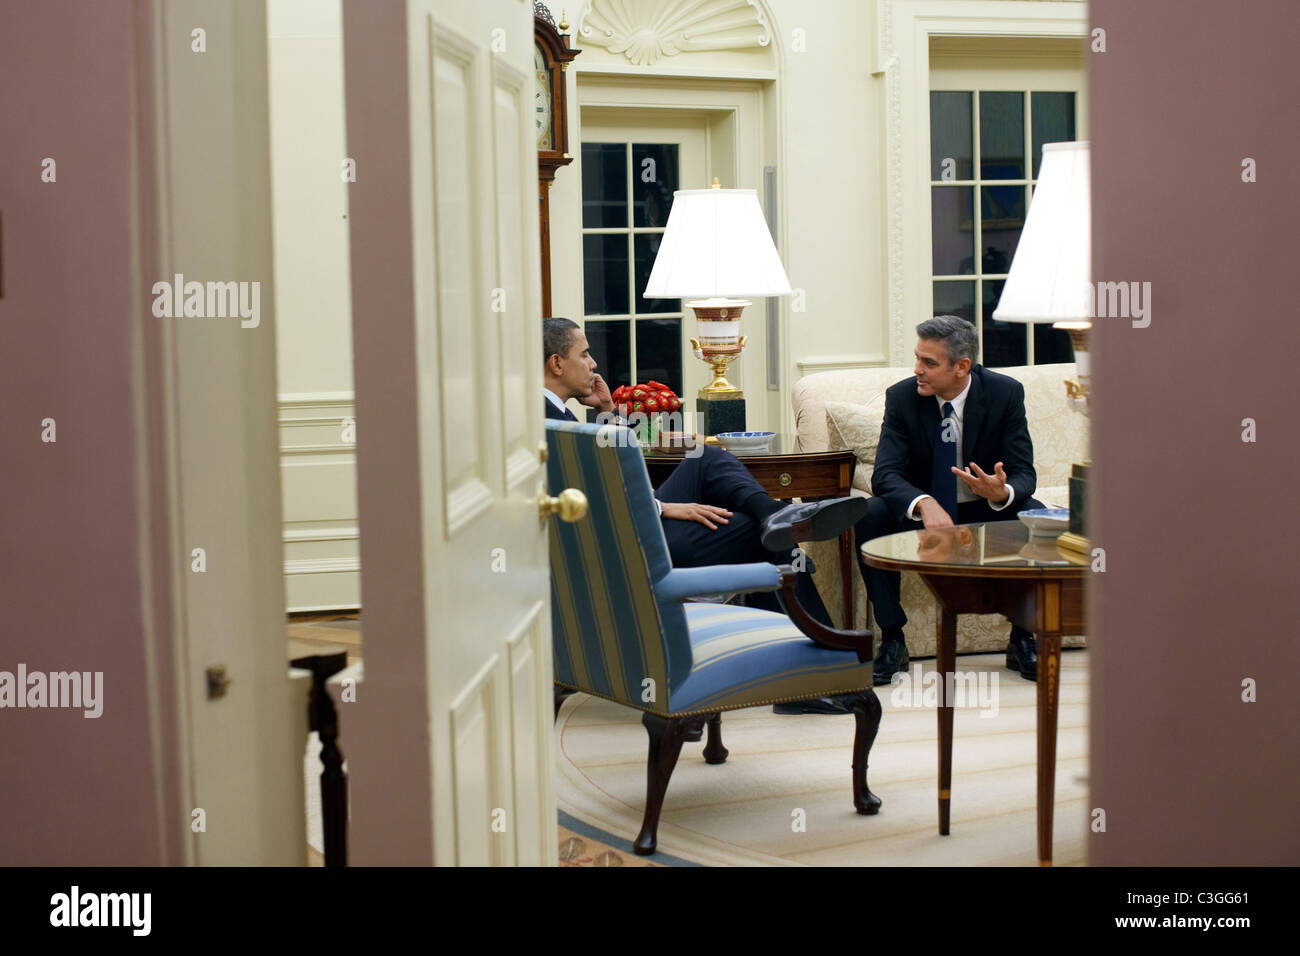 Präsident Barack Obama trifft mit dem Schauspieler George Clooney im Oval Office Washington DC, USA - 23.02.09 weiße Haus Beamter Stockfoto